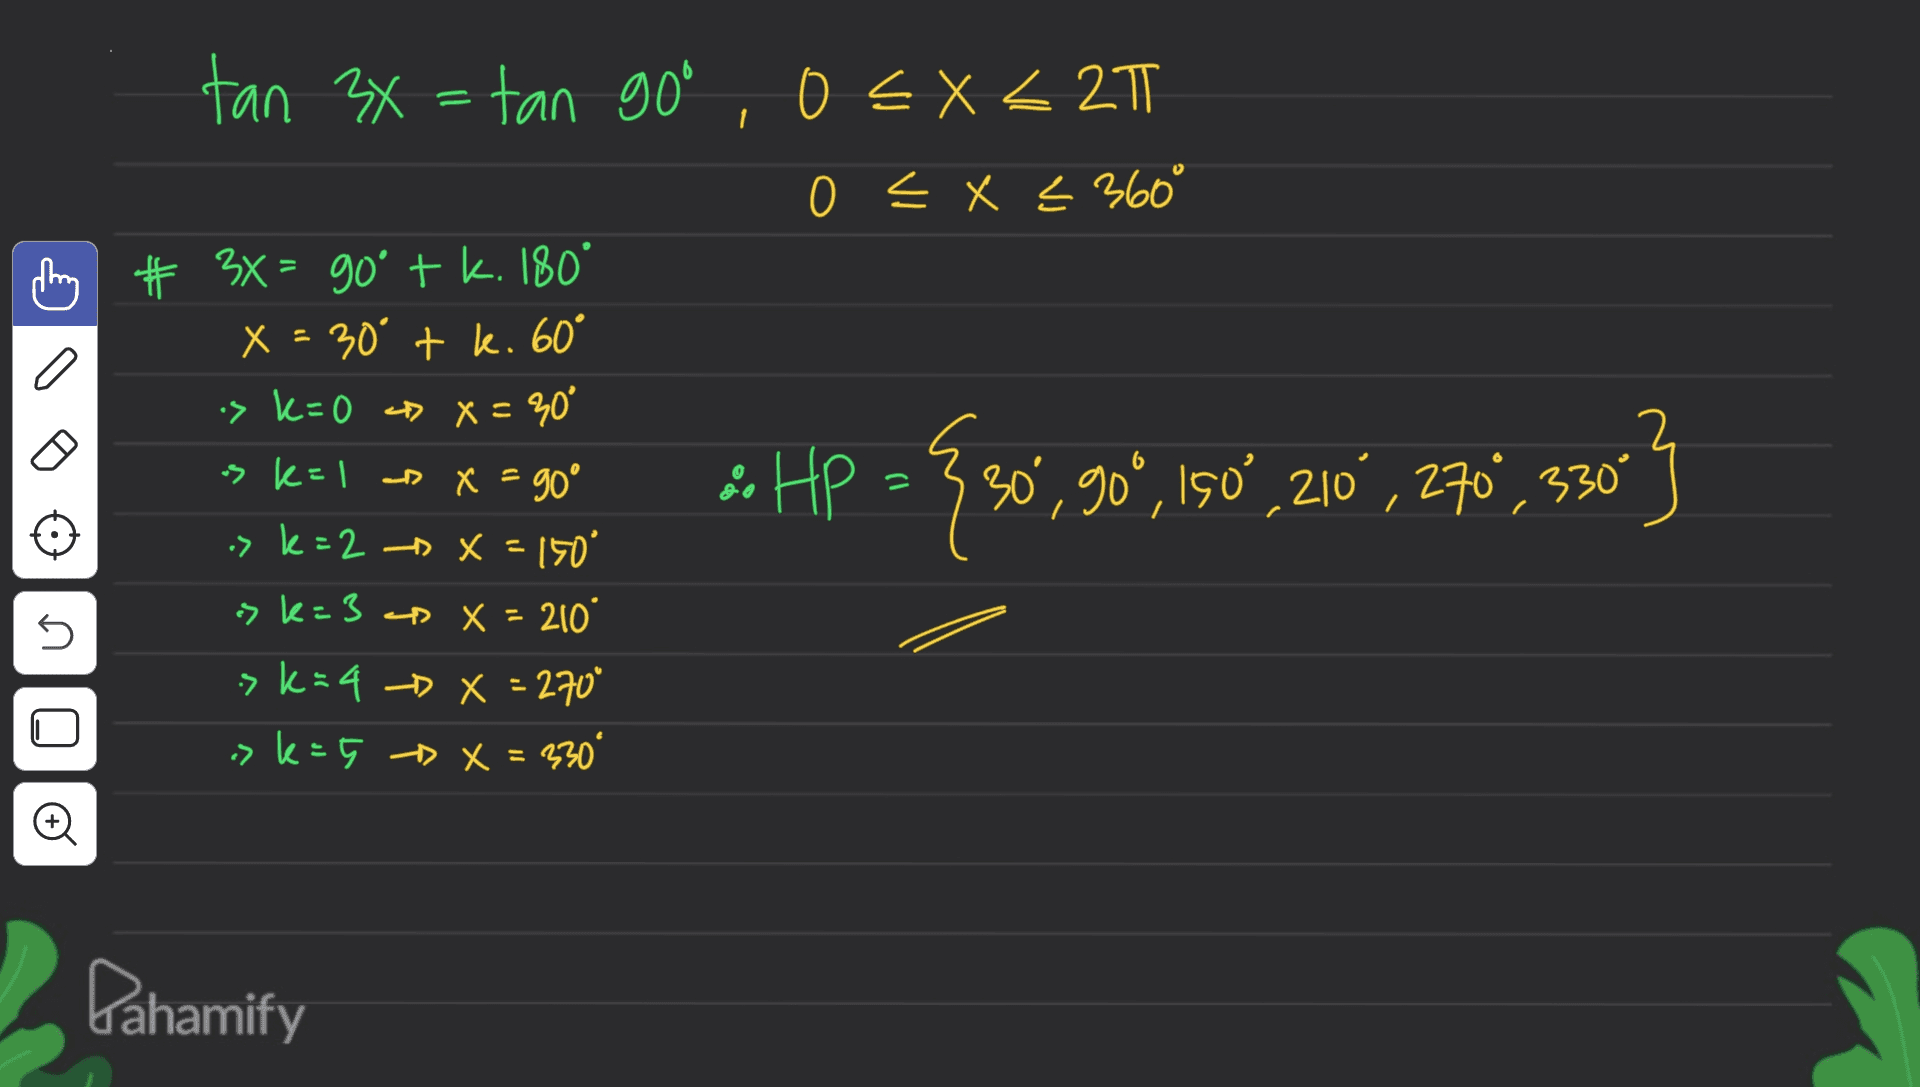 tan 3x = tan goo, o EX <21 0 < x < 360° # 3X = goº + k. 180° X = 30° tk. 60° is k= 0 D x = 30° os k=1 D X = 90° .> k = 2 -- X = 150 > k=3 X = 210° sk=4 -> X = 270 >k=5 X = 330° 3. HP = {sov, 90° 15,210", 270,5803 = 5 Pahamify 